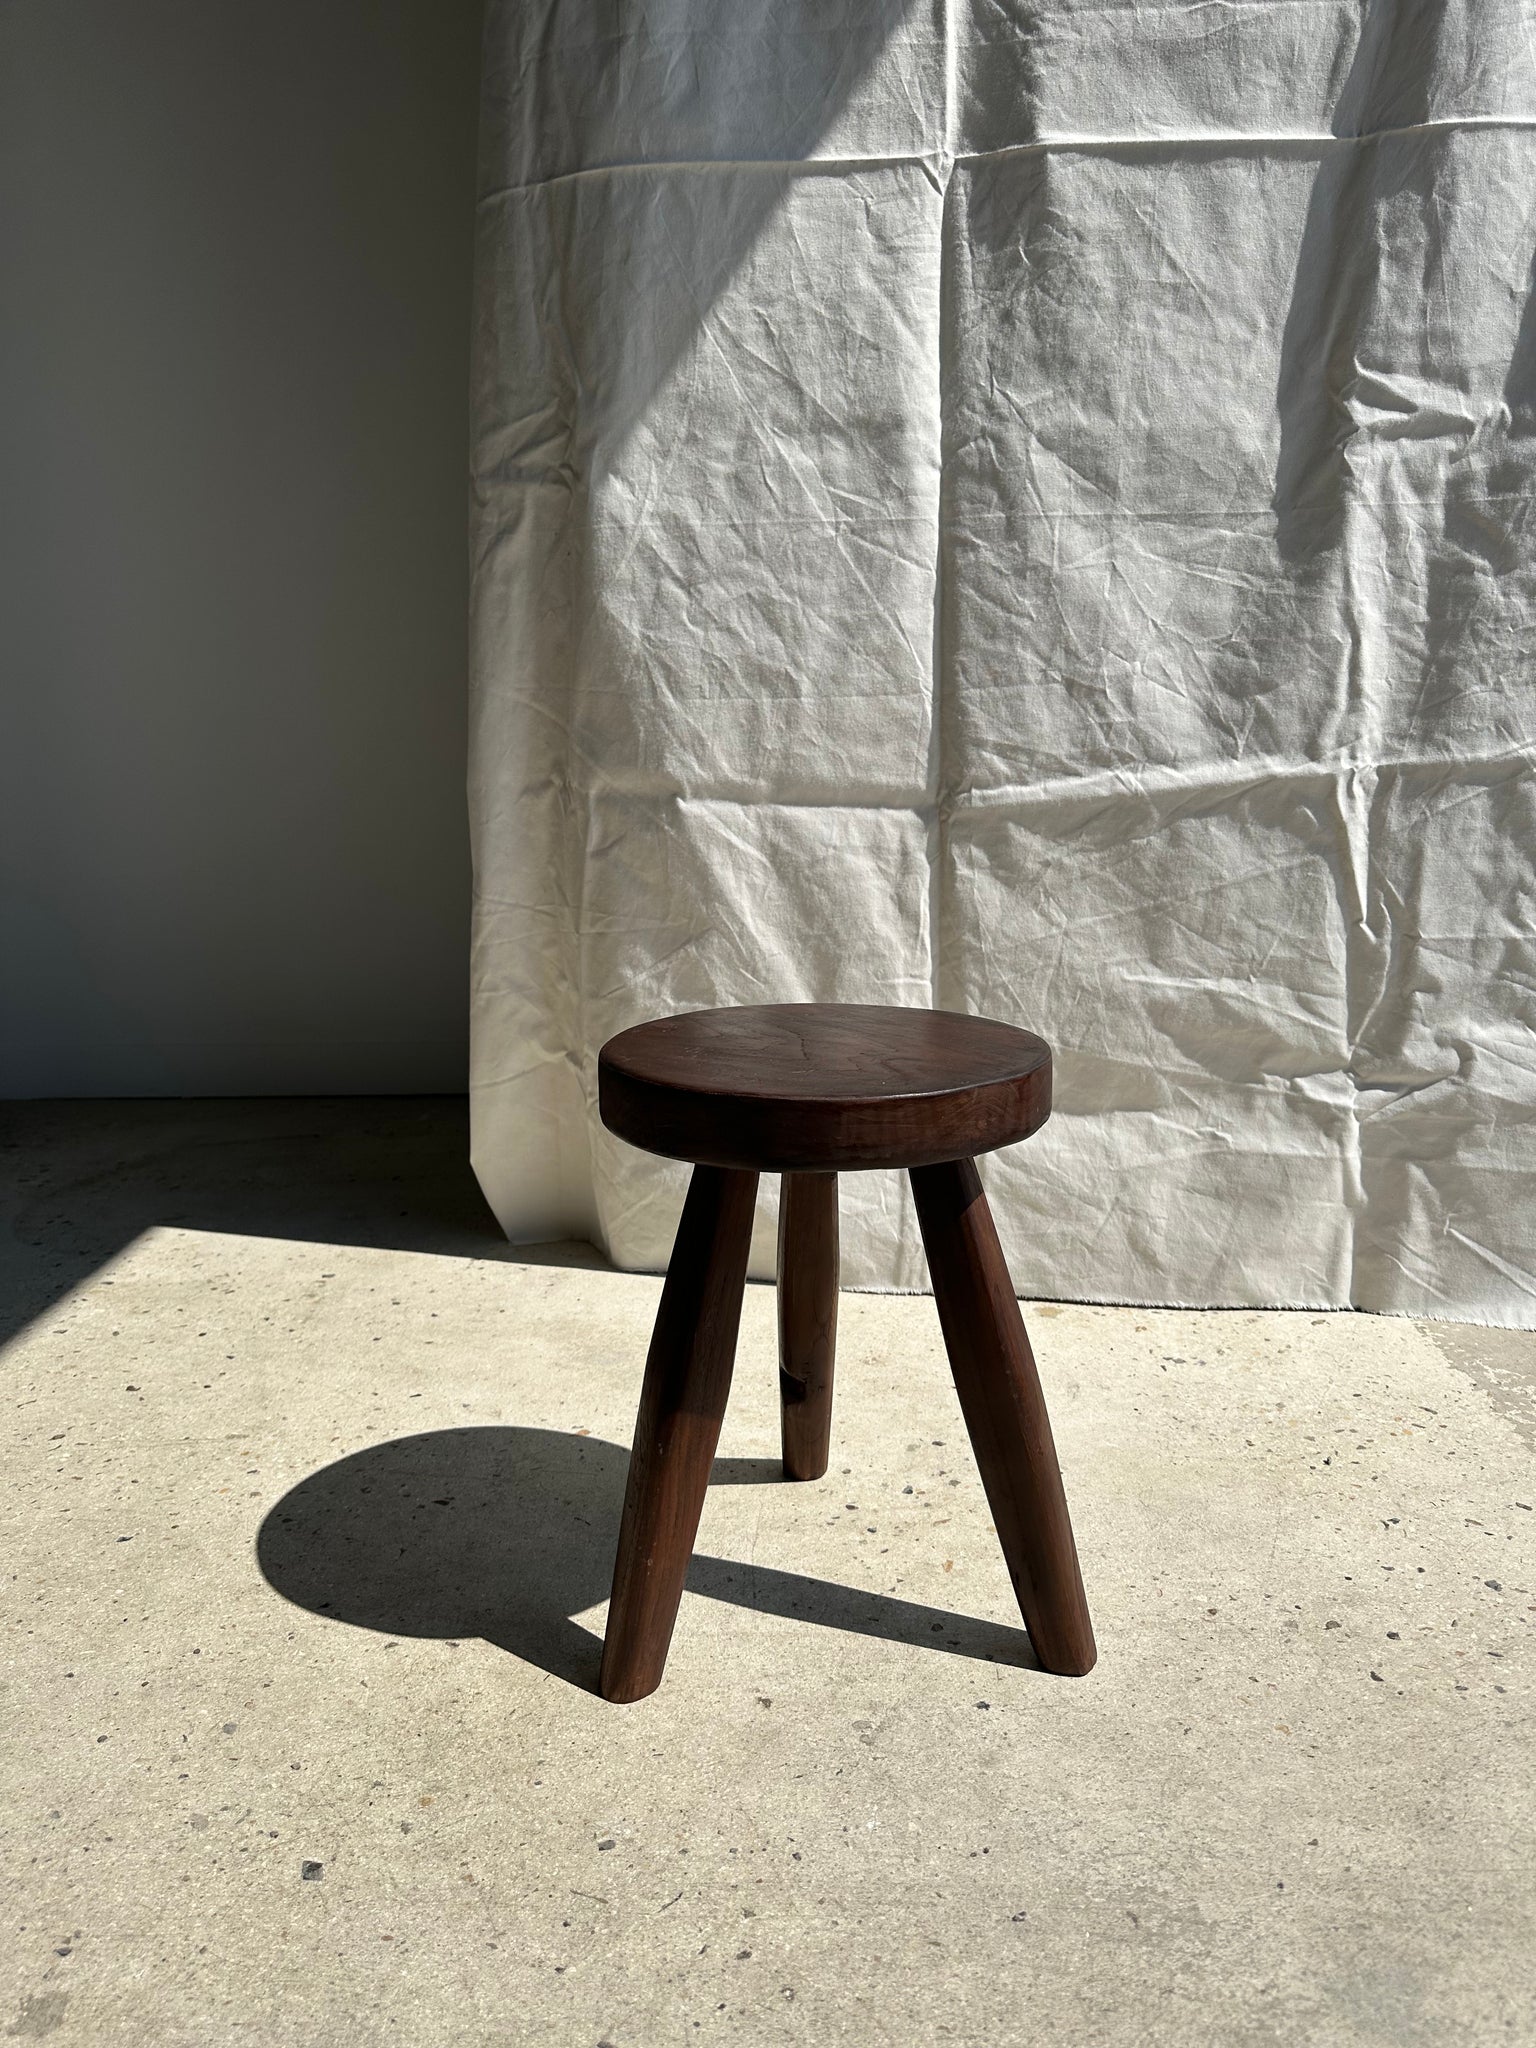 Tabouret tripode en teck upcyclé haut plat - Petit tabouret en bois massif brun assise circulaire plate H:40cm D:30cm